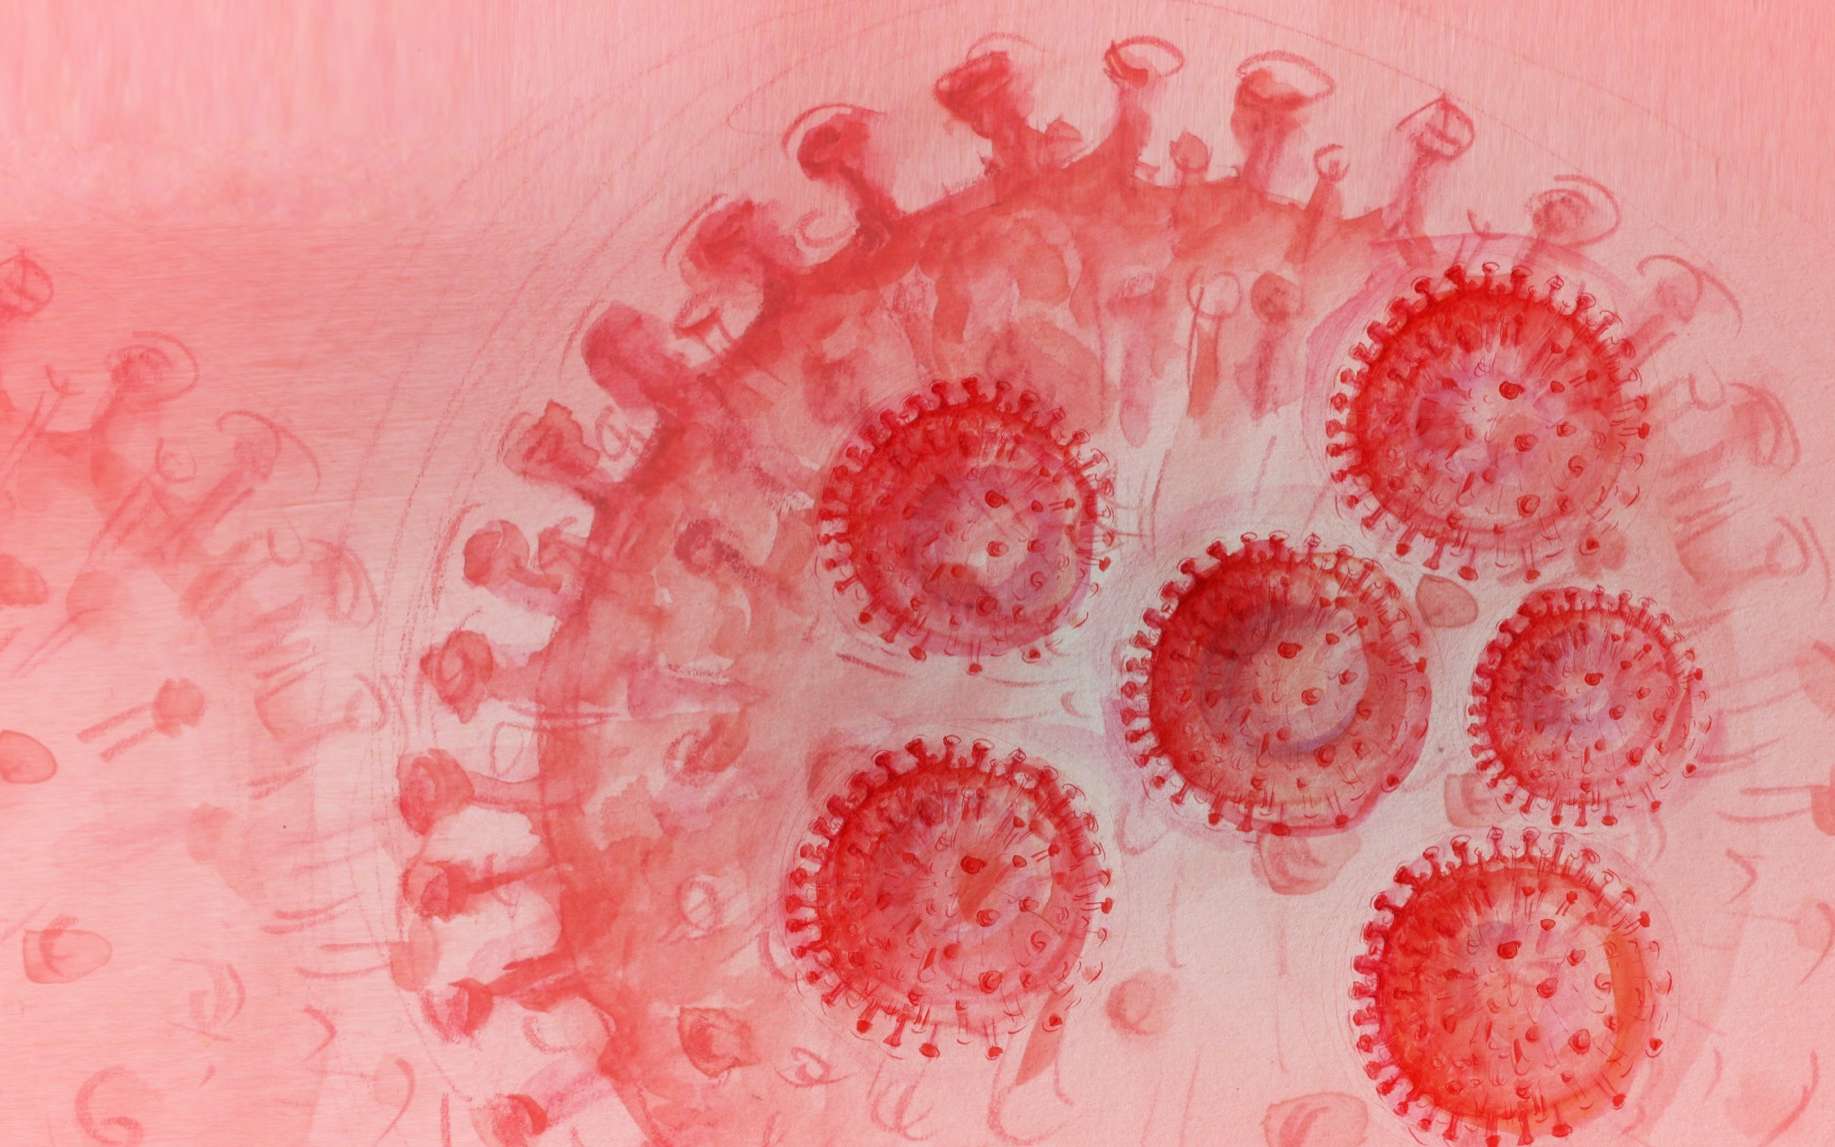 Plusieurs études confirment que les réinfections par le nouveau coronavirus, le Sars-CoV-2, à l’origine de la pandémie de Covid-19 sont possibles. © Annett Seidler, Adobe Stock